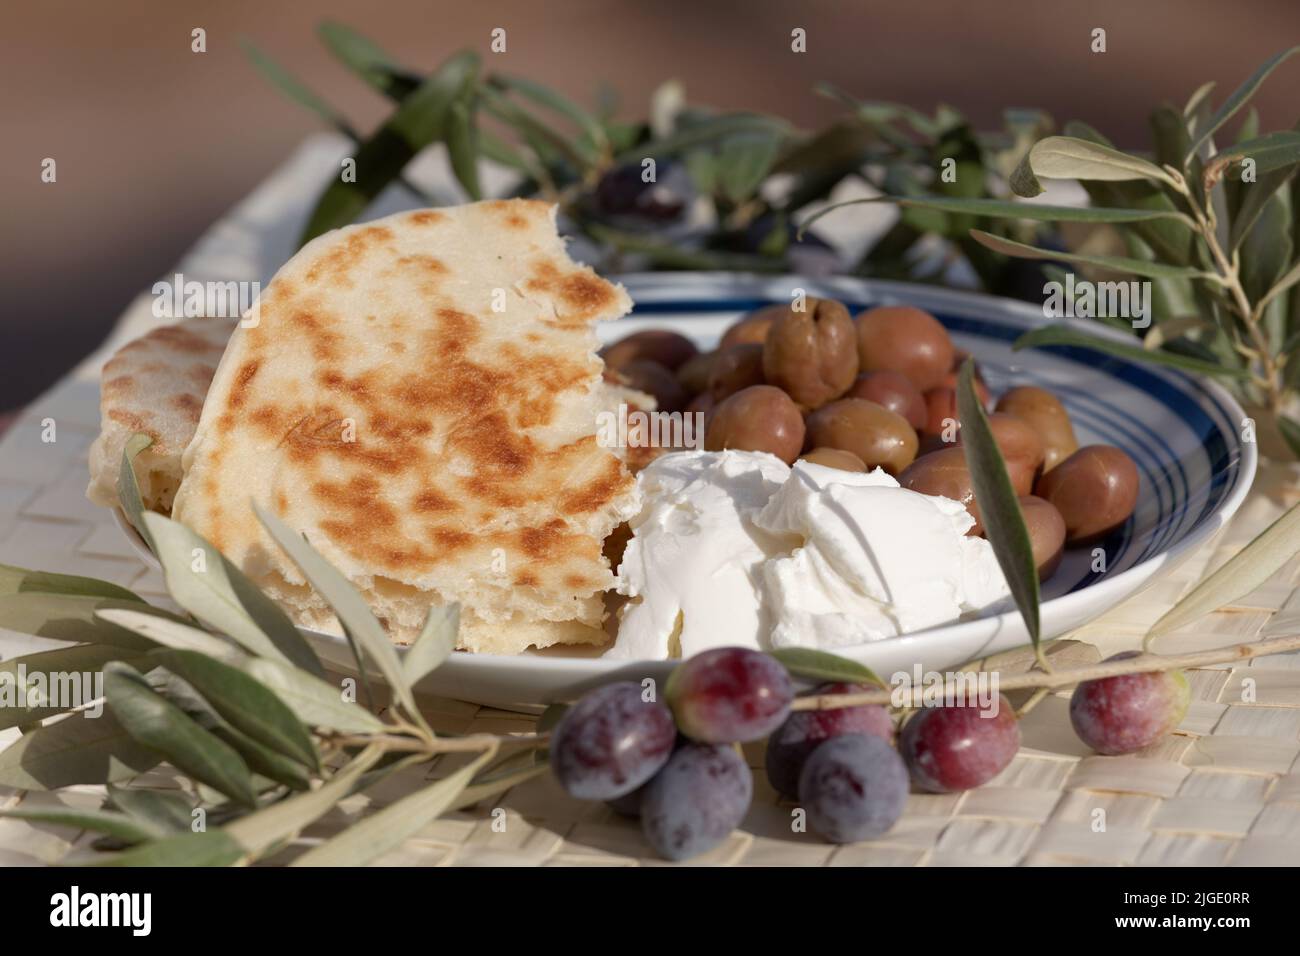 Colazione rustica mediterranea con pane bazlama, formaggio morbido e olive salate Foto Stock